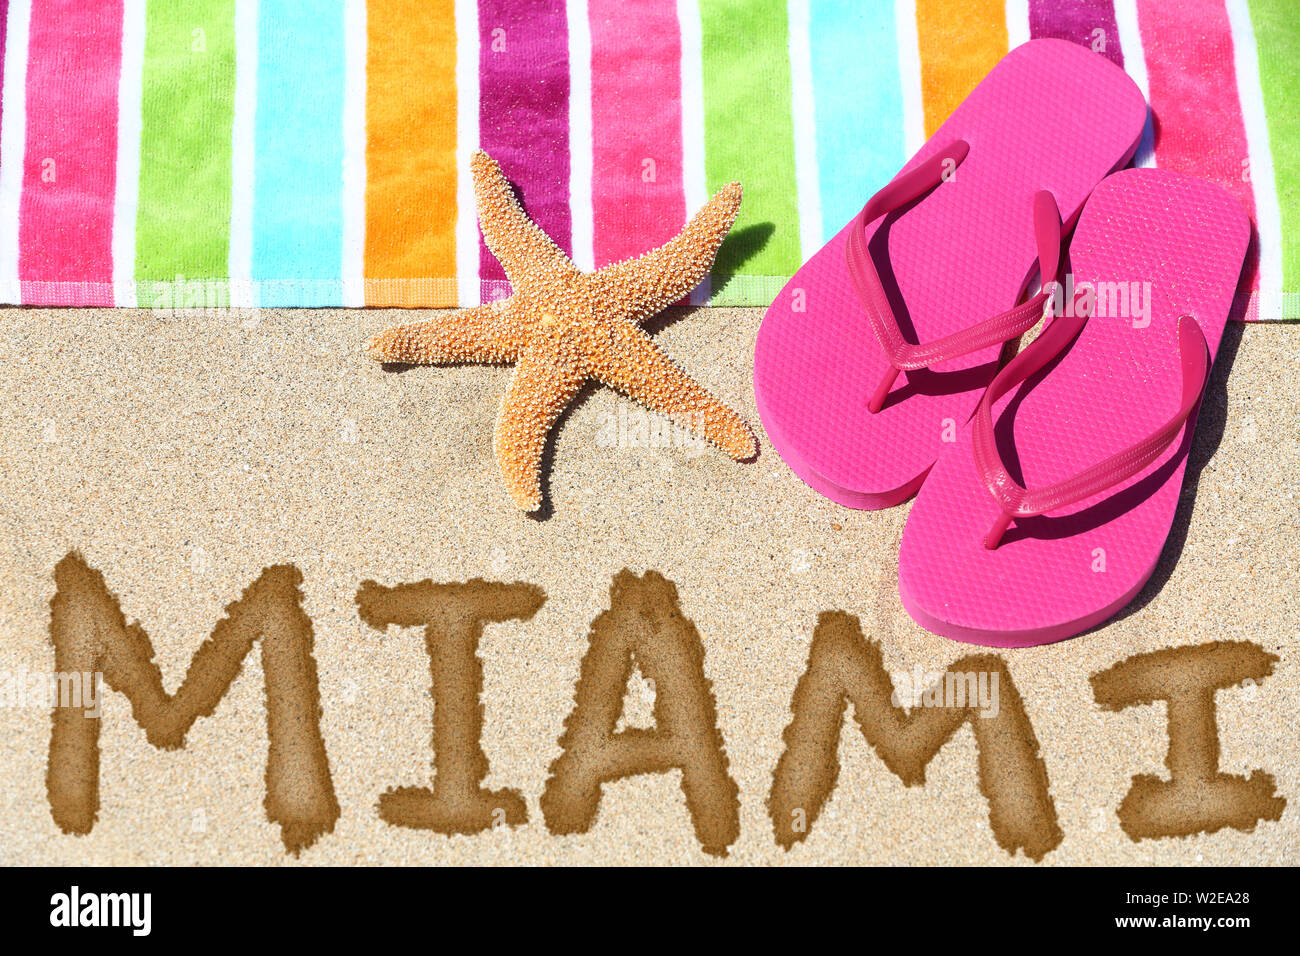 A Miami beach concetto di viaggio. MIAMI scritto in sabbia con acqua vicino al telo da spiaggia, estate sandali e stelle marine. Estate e sole vacanza vacanze. Foto Stock